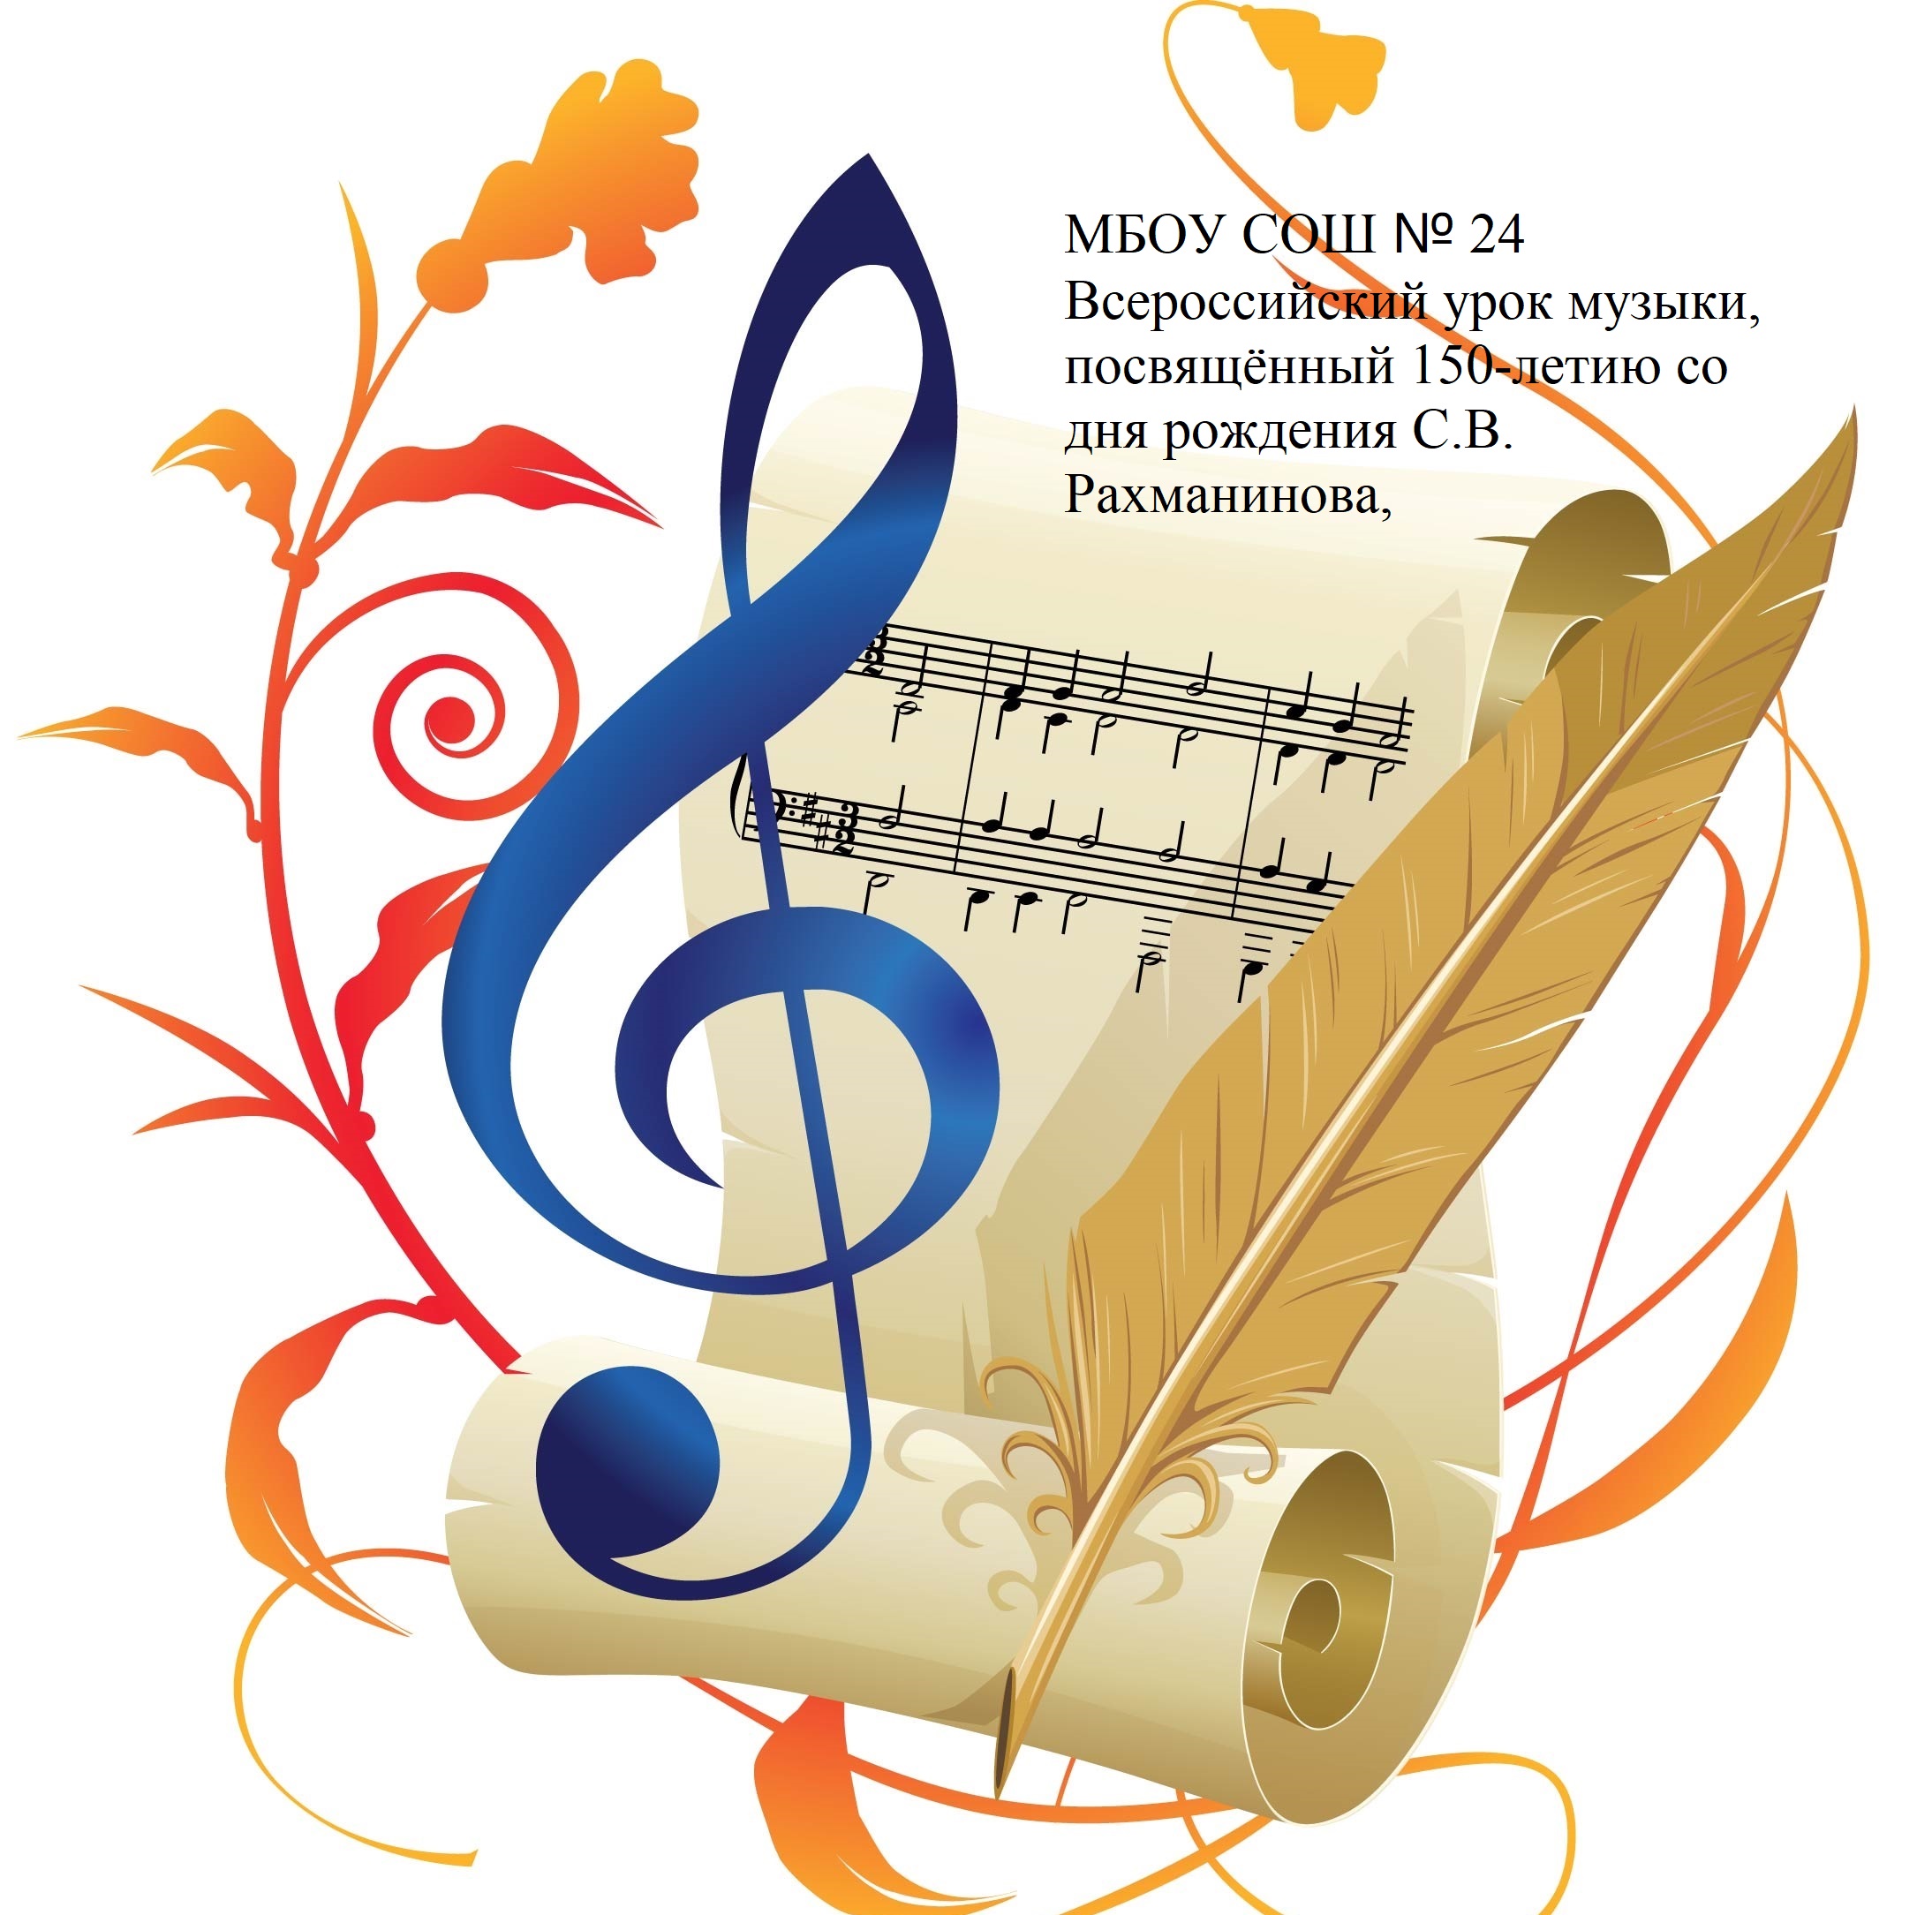 Всероссийский урок музыки, посвящённый 150-летию С.В. Рахманинова.